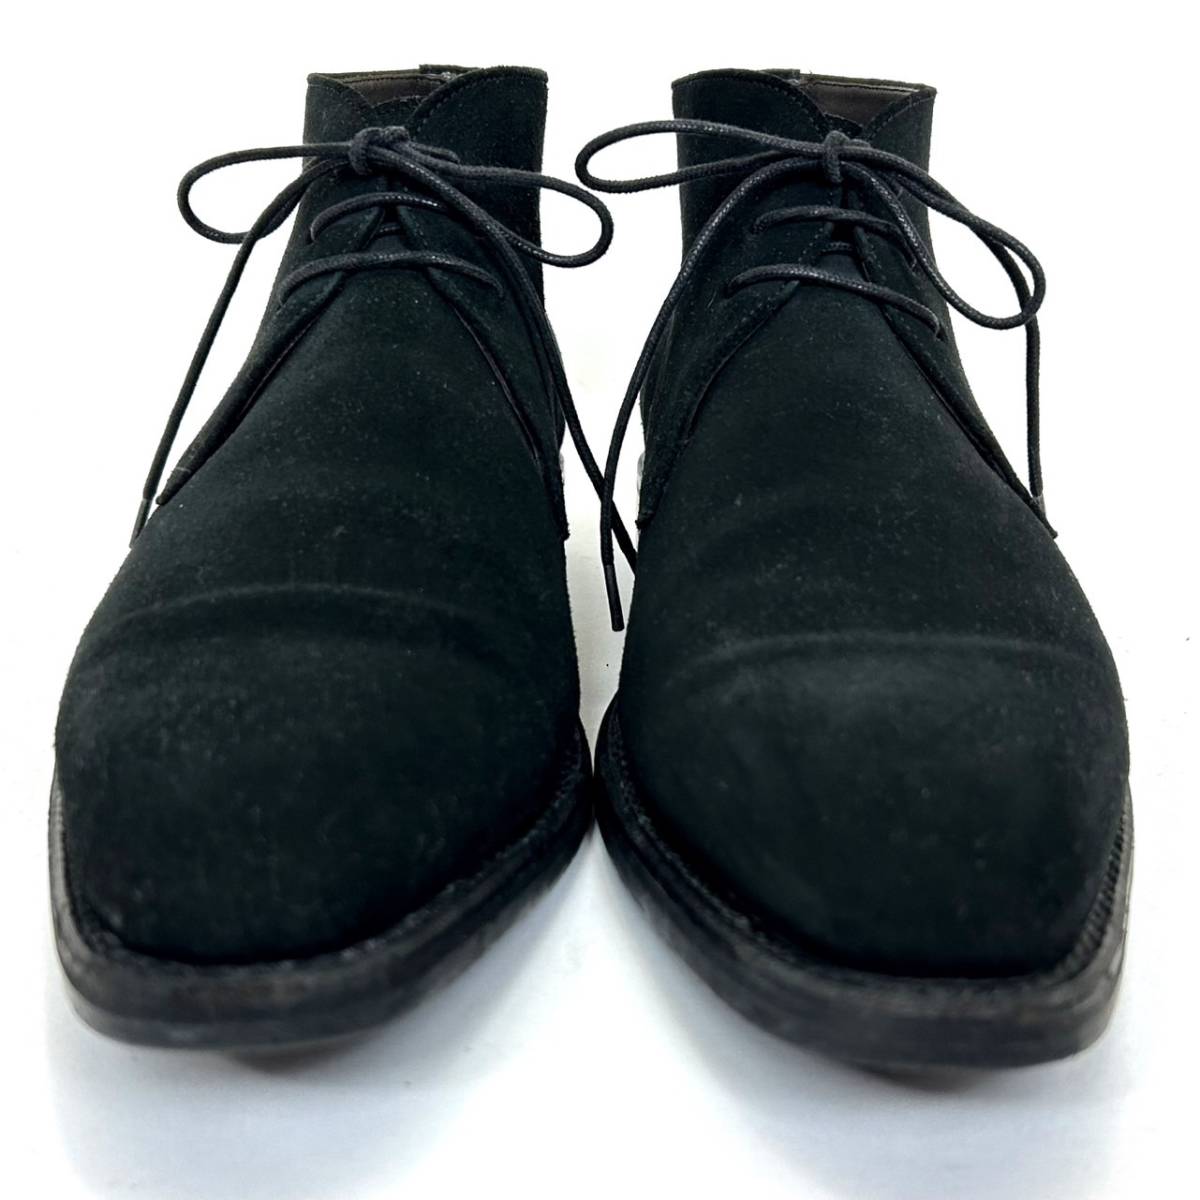 即決 Berwick バーウィック メンズ 6.5 25cm程度 スエード 本革 レザー チャッカブーツ 黒色 ブラック ビジネス ドレスシューズ 革靴 中古_画像4